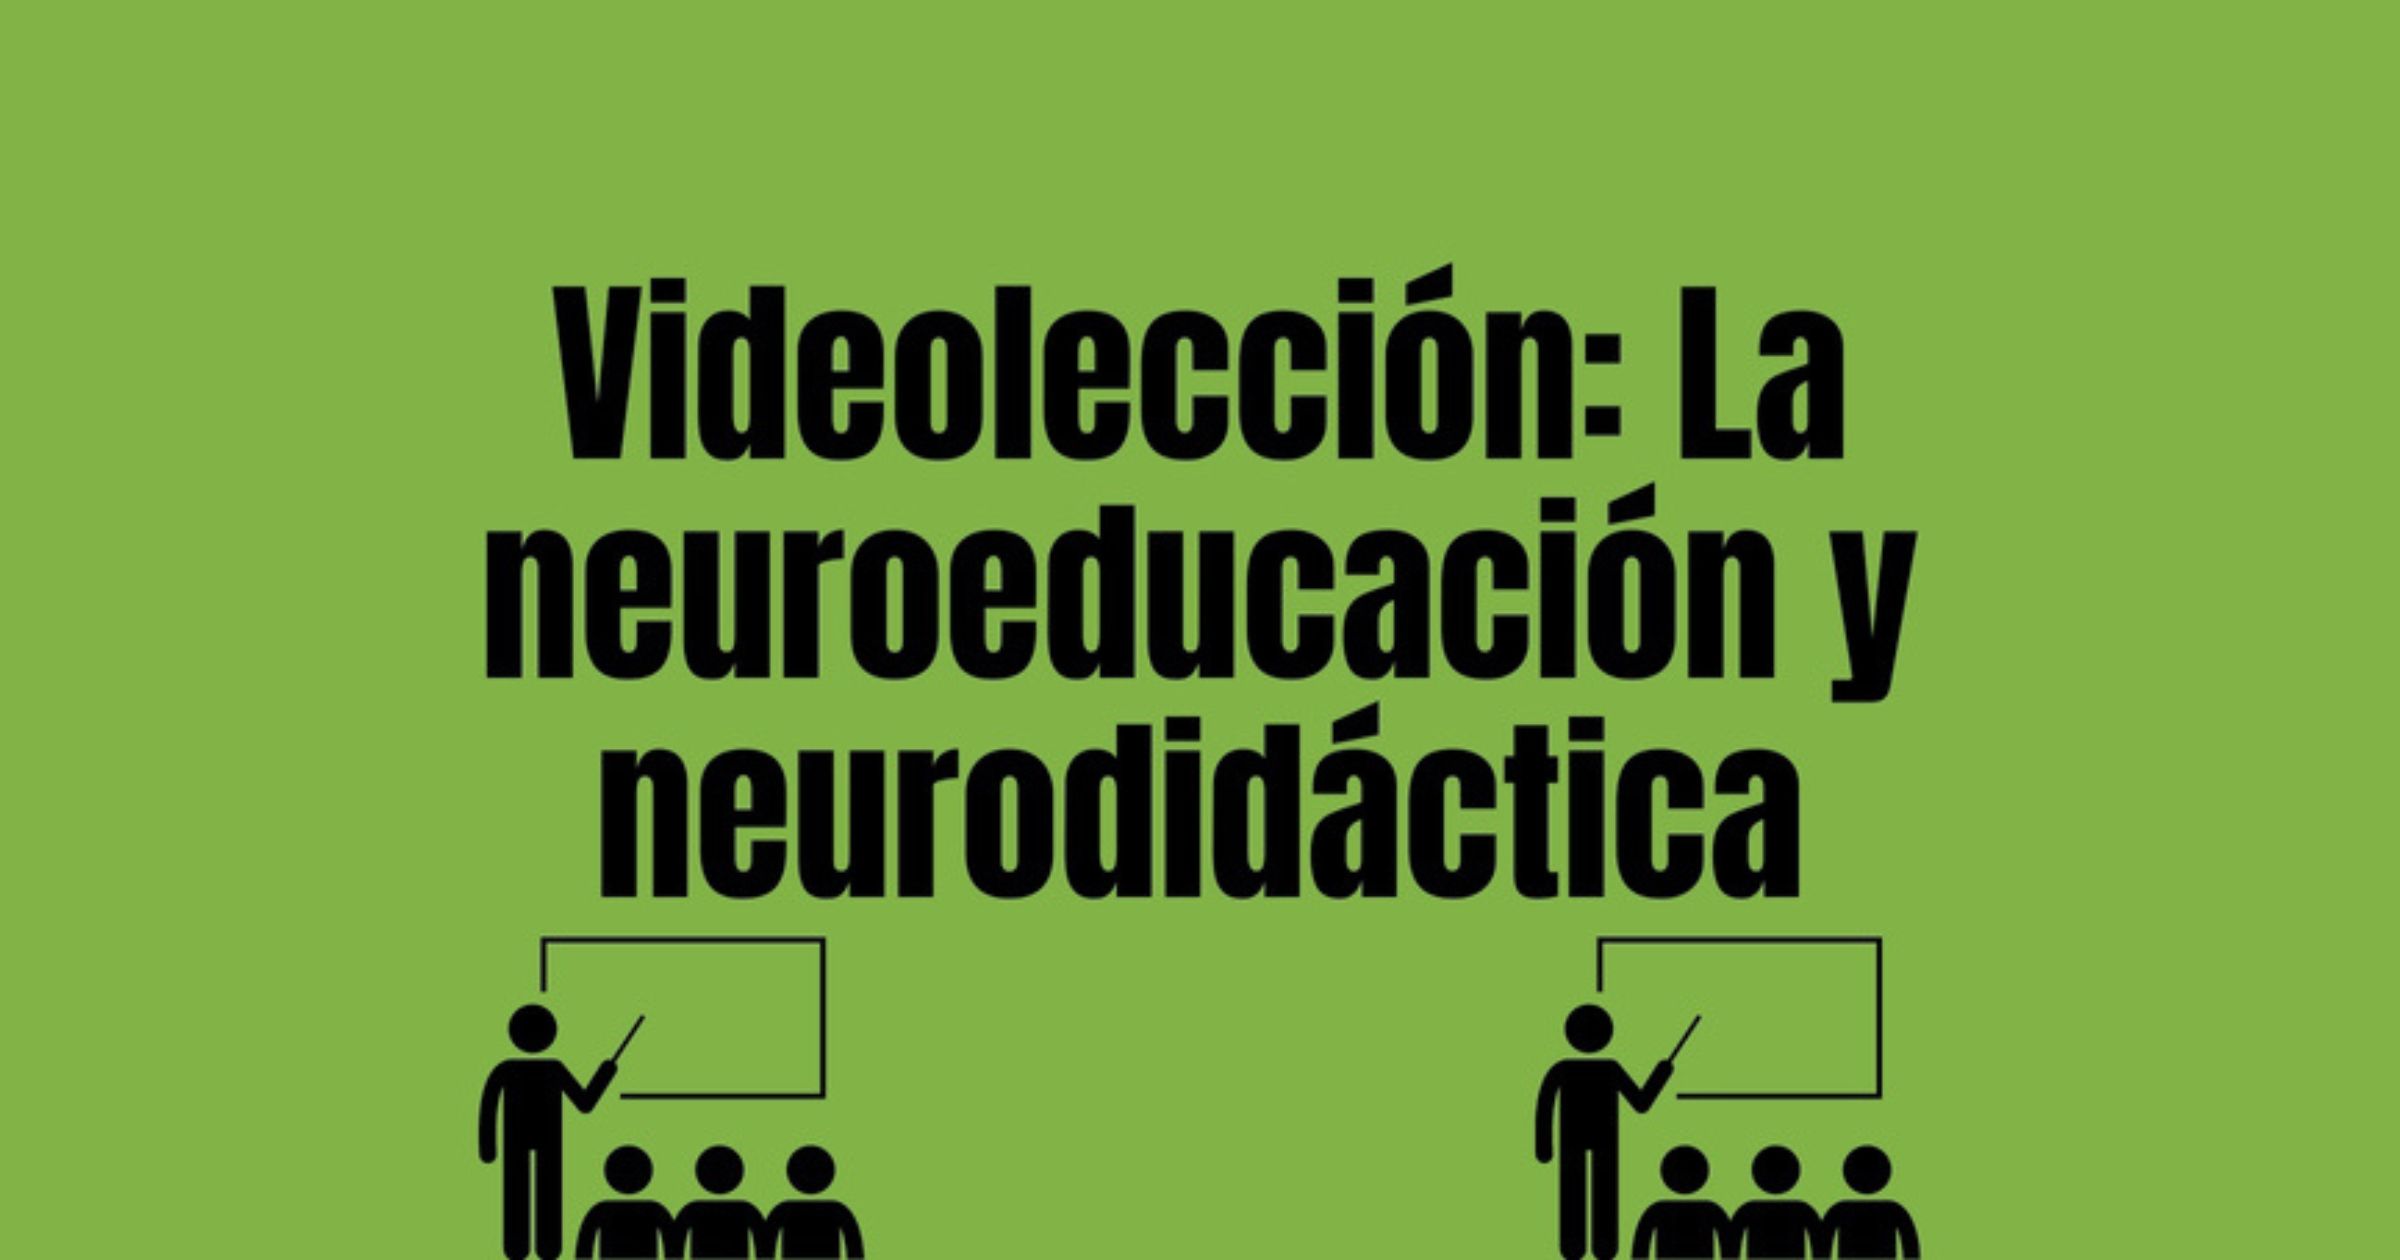 Videolección: la neuroeducación y neurodidáctica